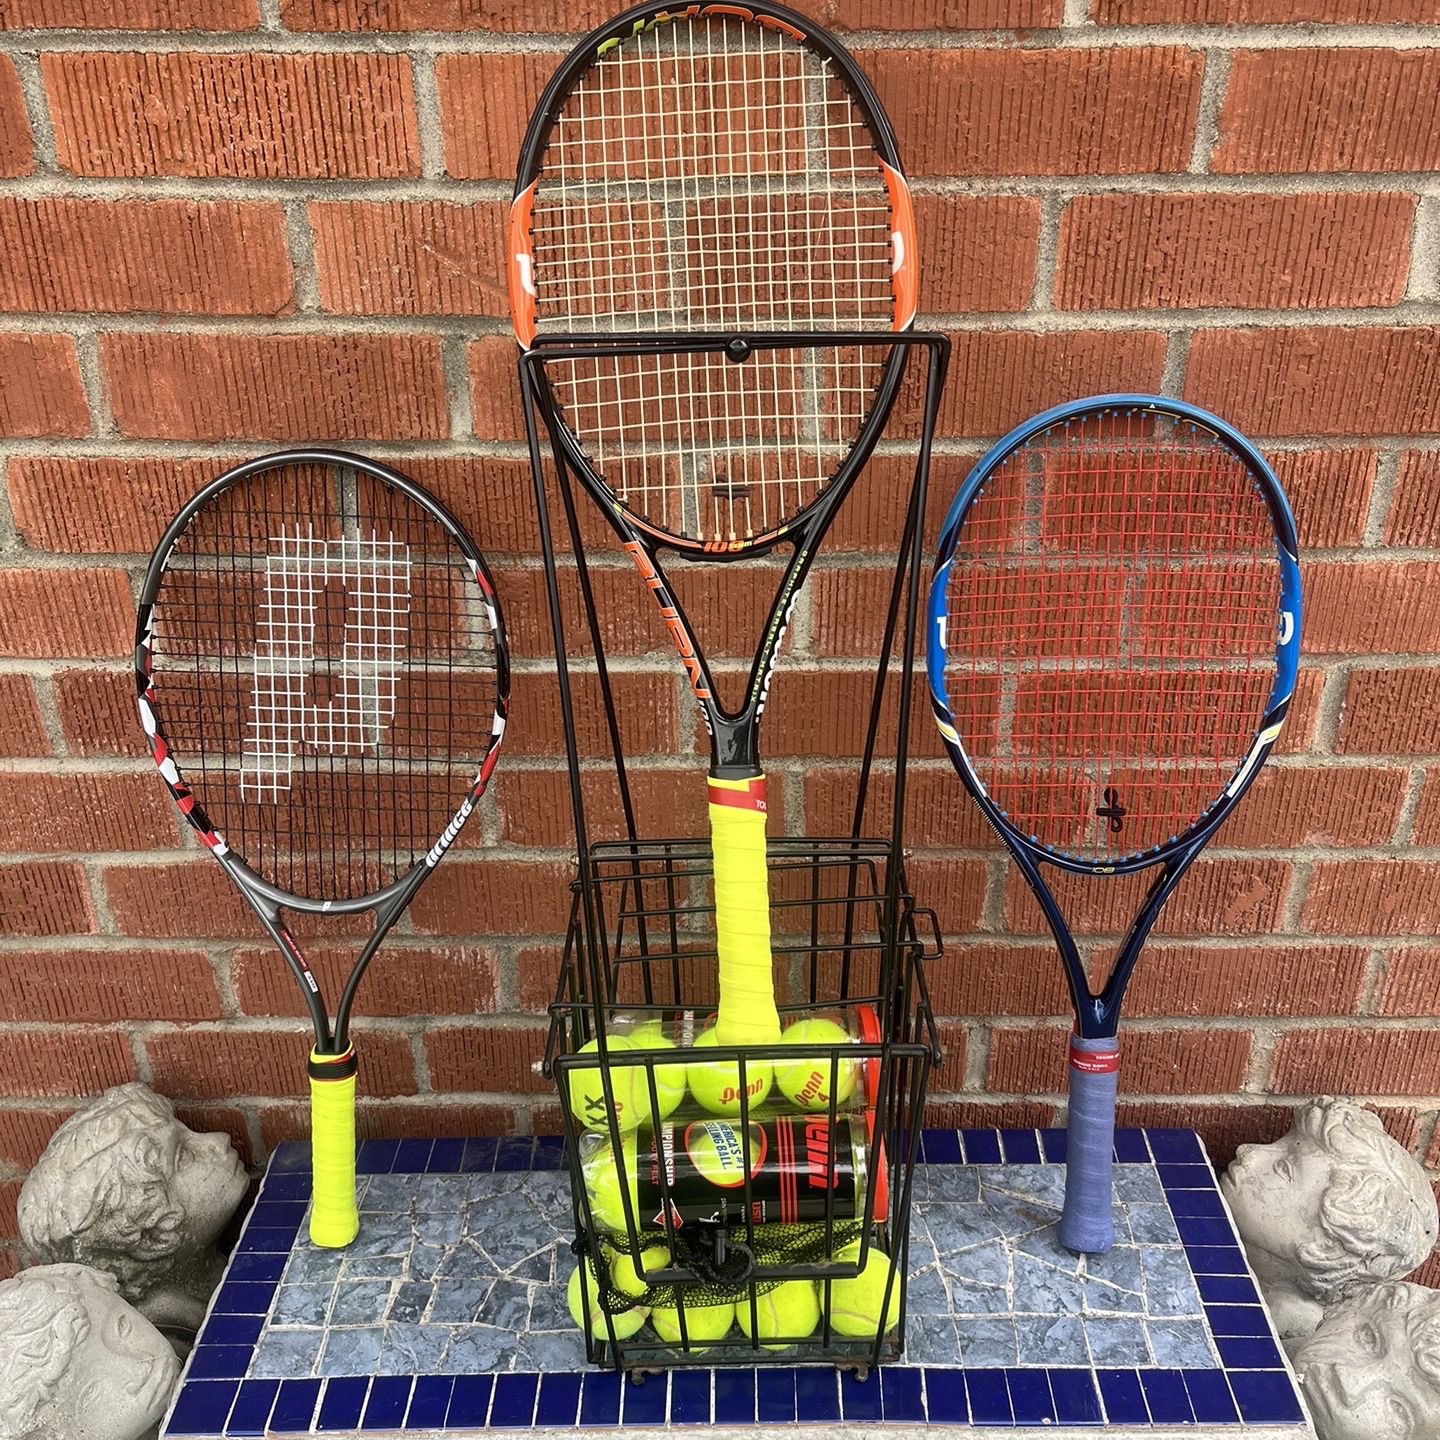 Tennis Rackets Hopper And Balls $150